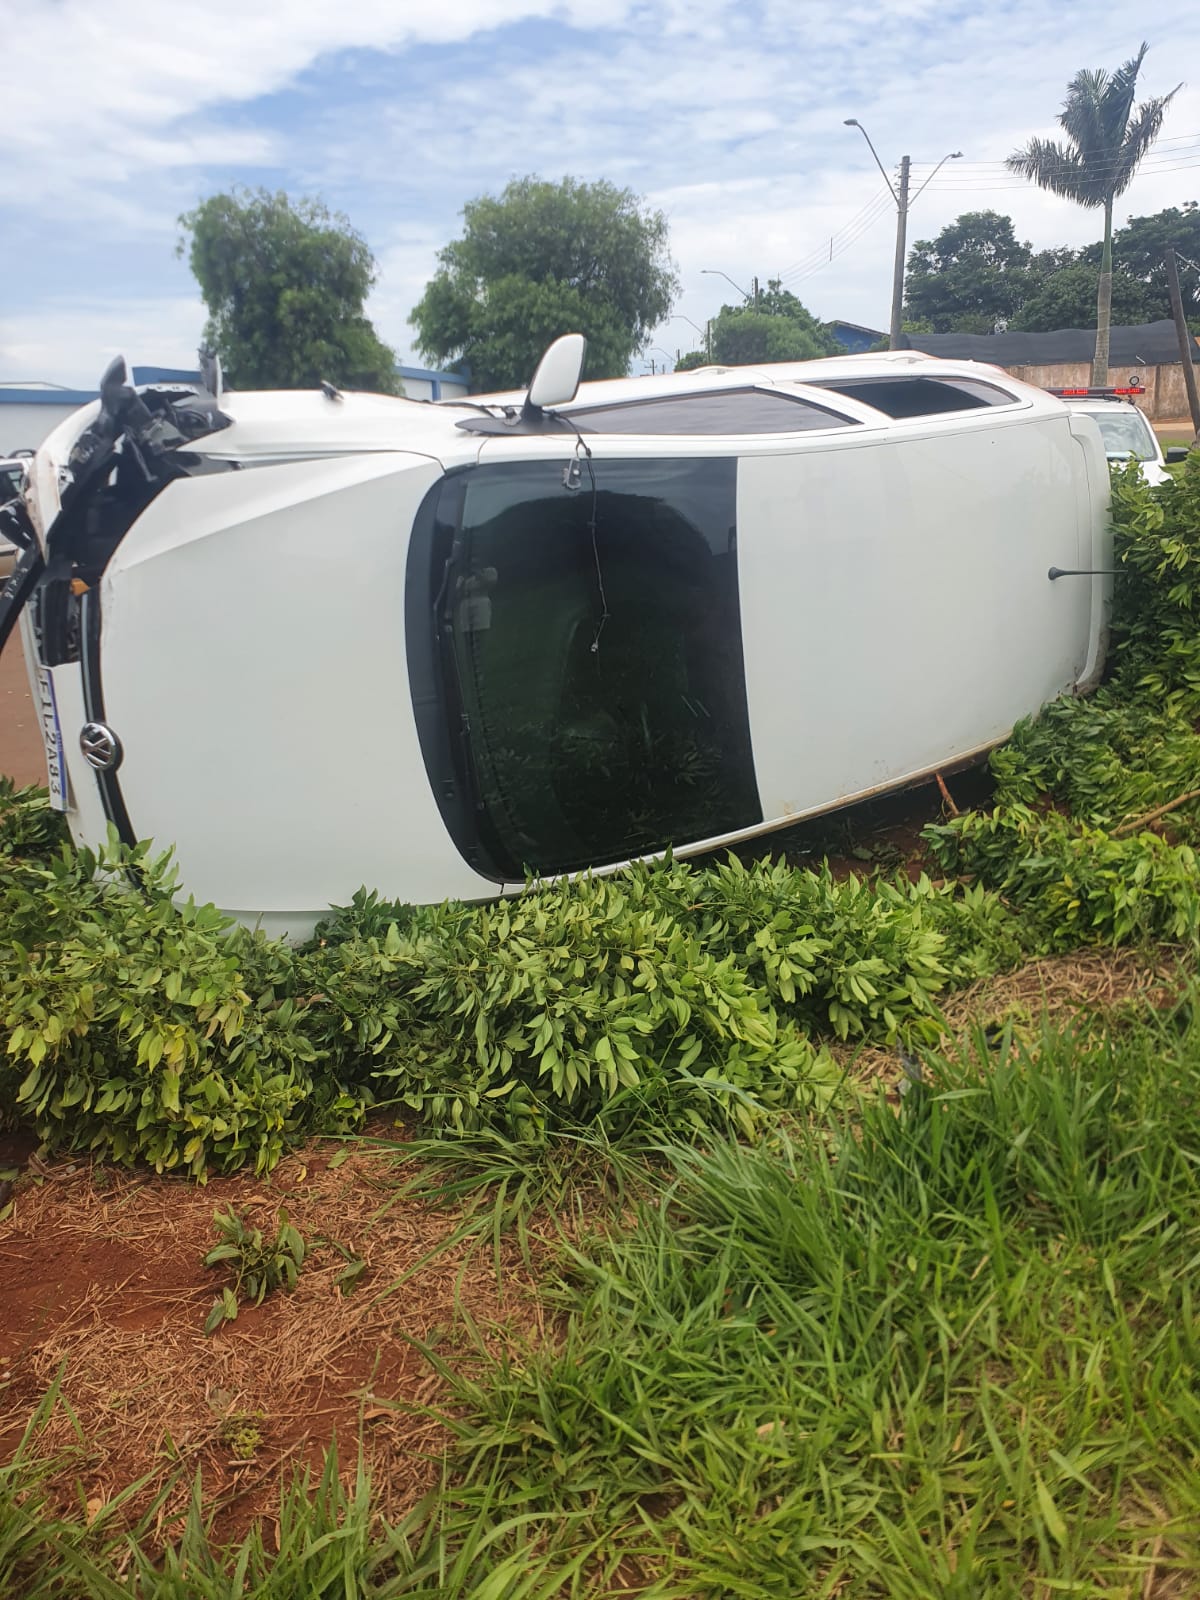 Após furtar veículo em Taquarituba, larápio sofre acidente e abandona carro - sudoestepaulista